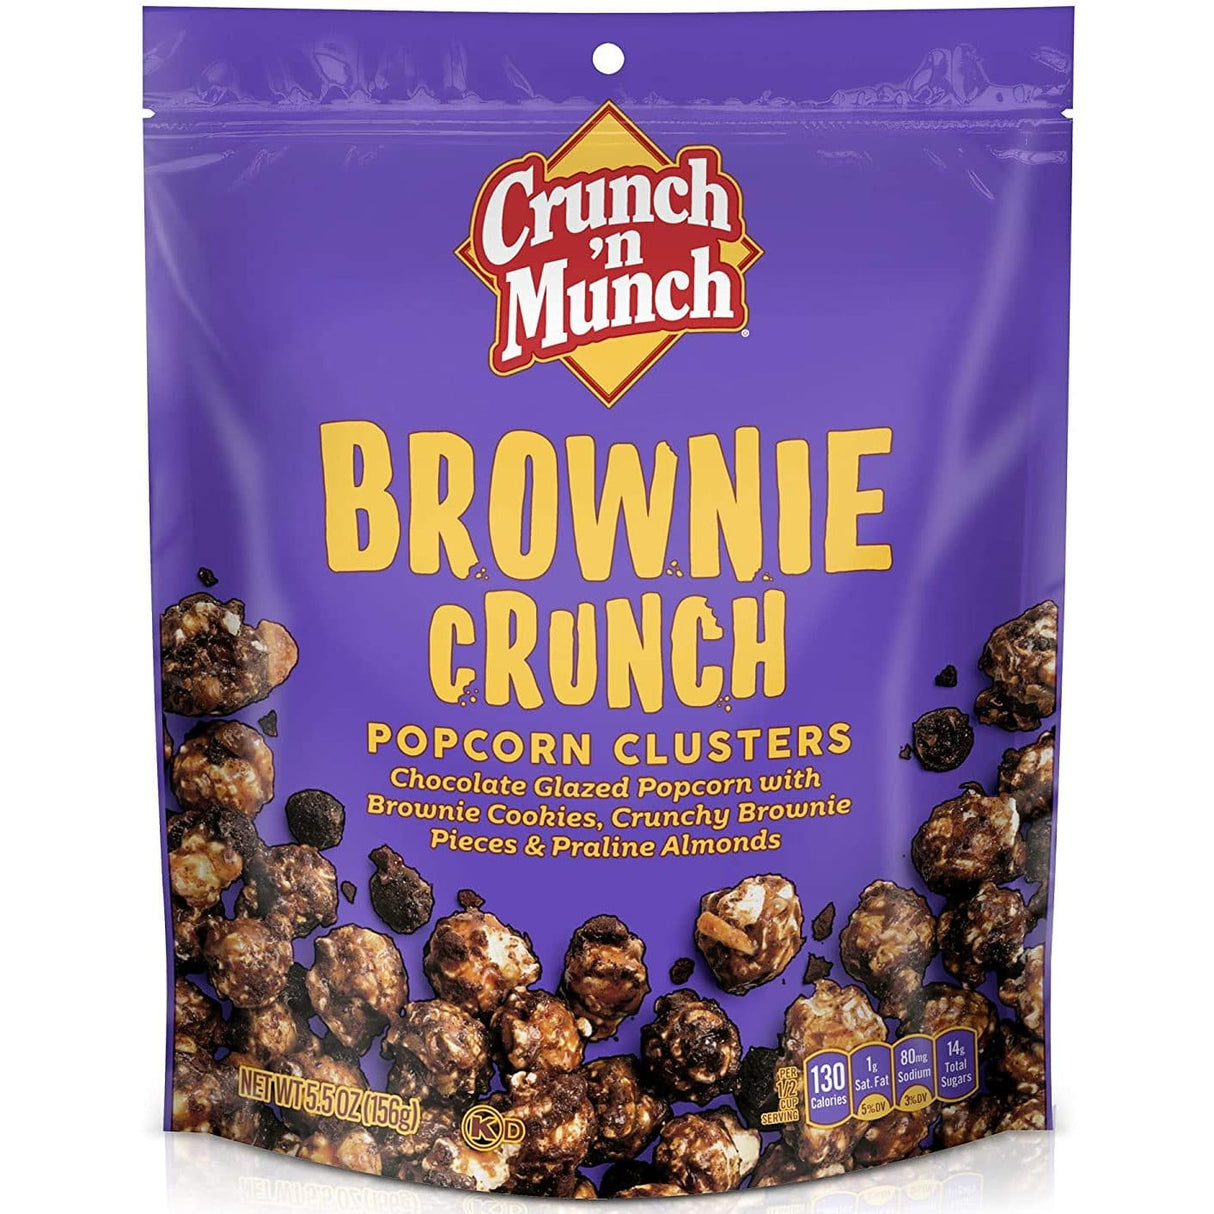 Crunch 'n Munch Popcorn Clusters Brownie Brittle (156g)